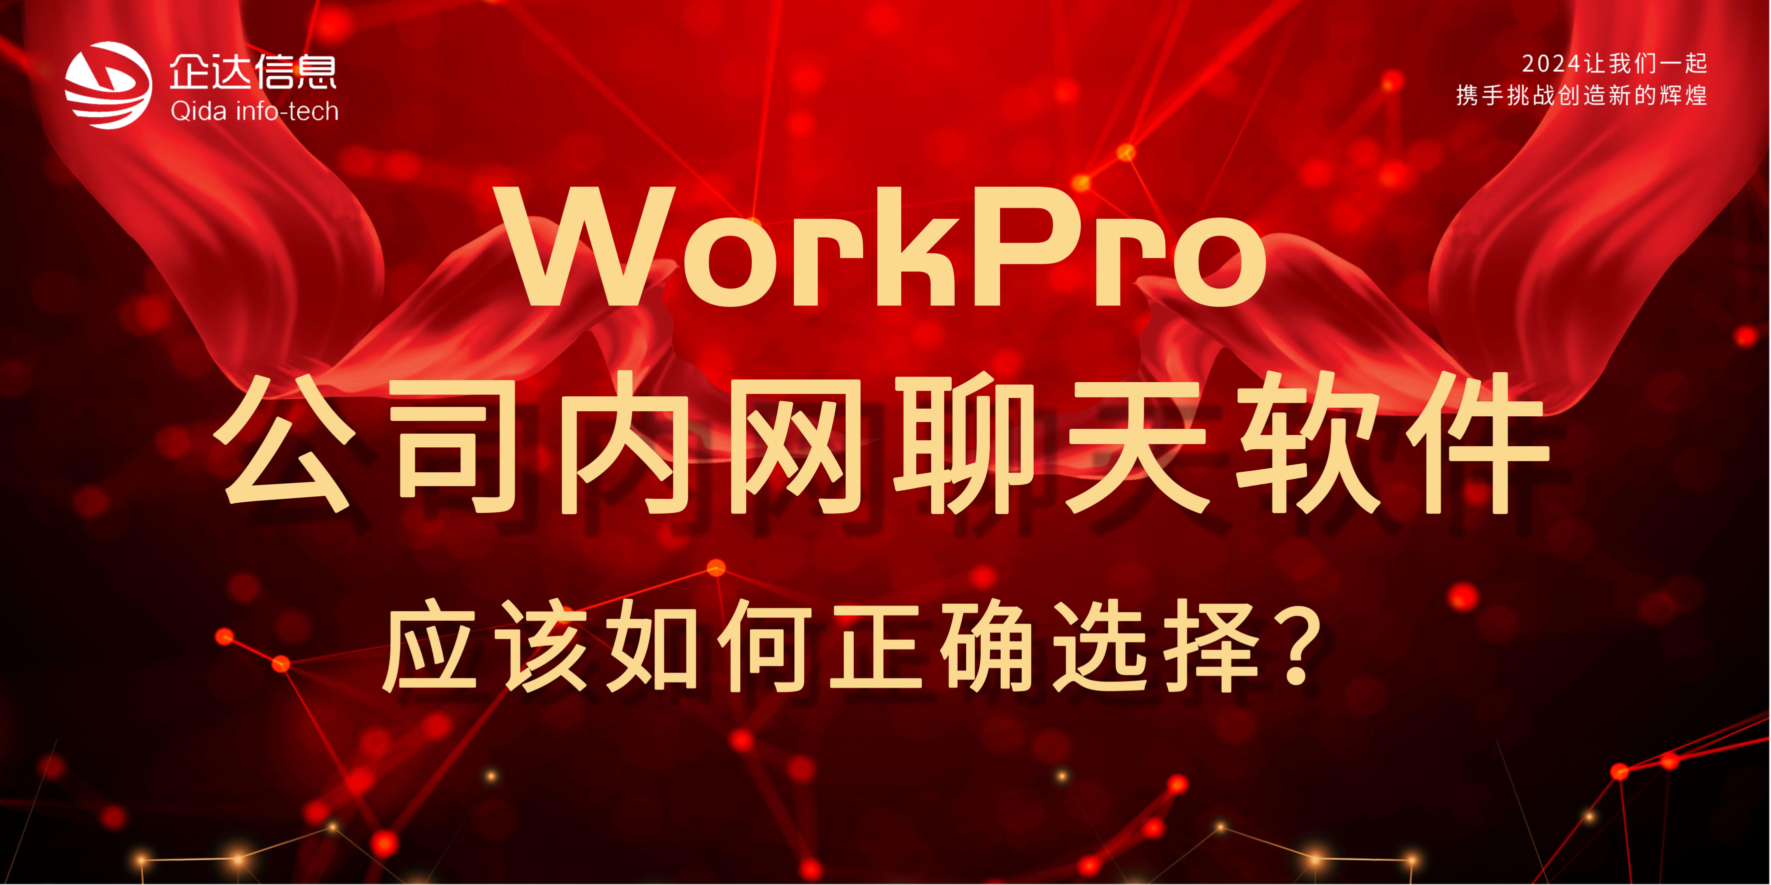 WorkPro即时通讯软件